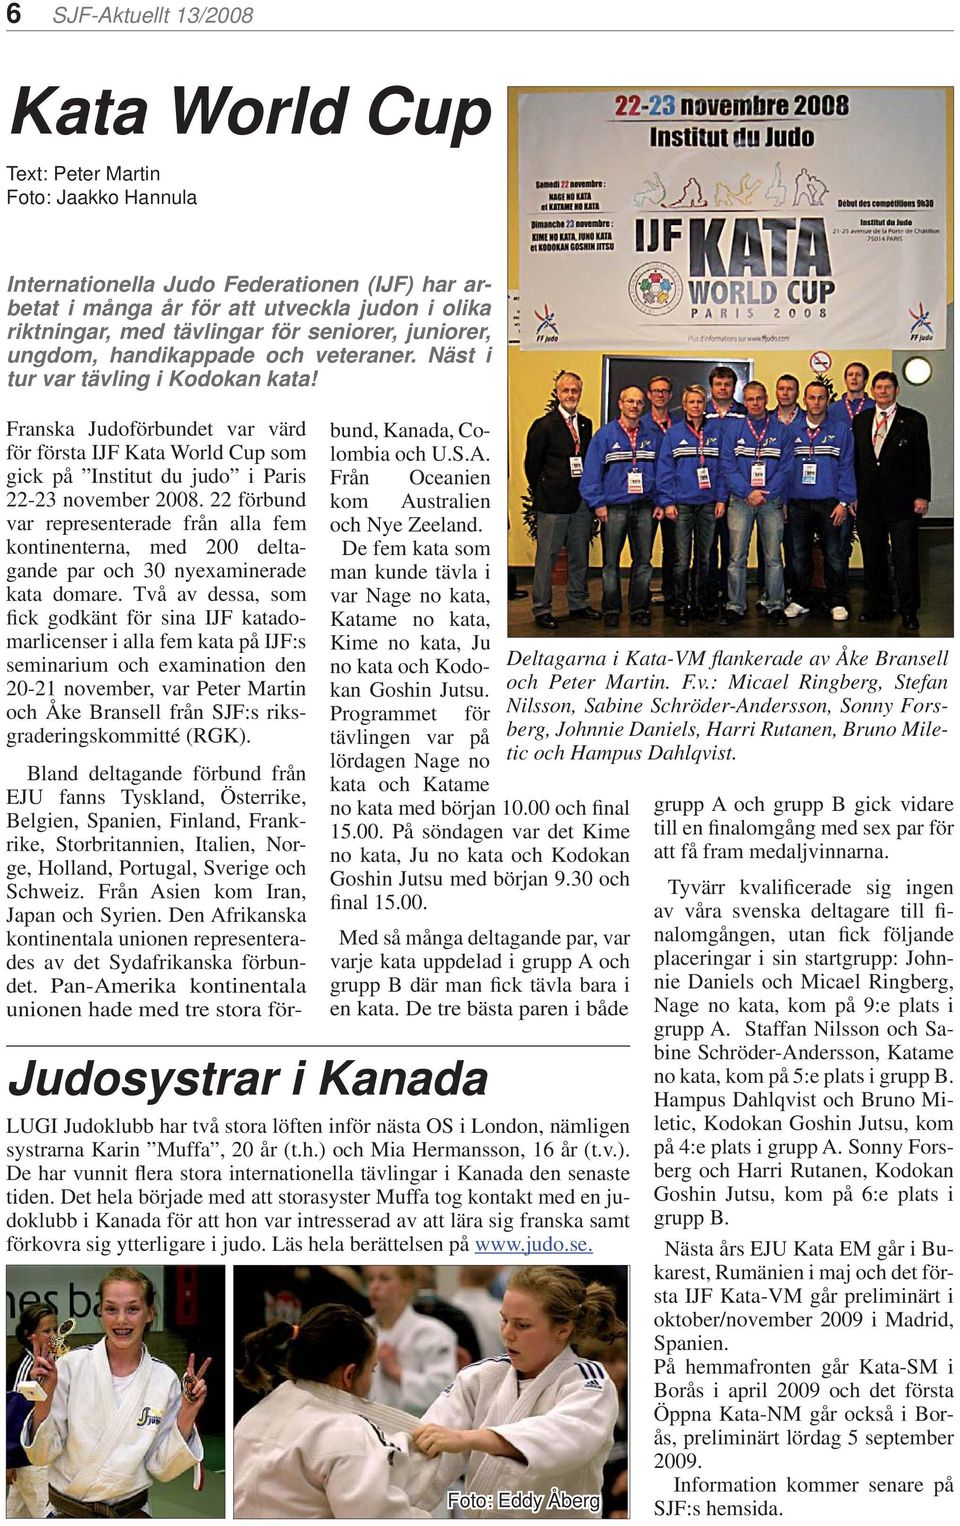 Franska Judoförbundet var värd för första IJF Kata World Cup som gick på Institut du judo i Paris 22-23 november 2008.